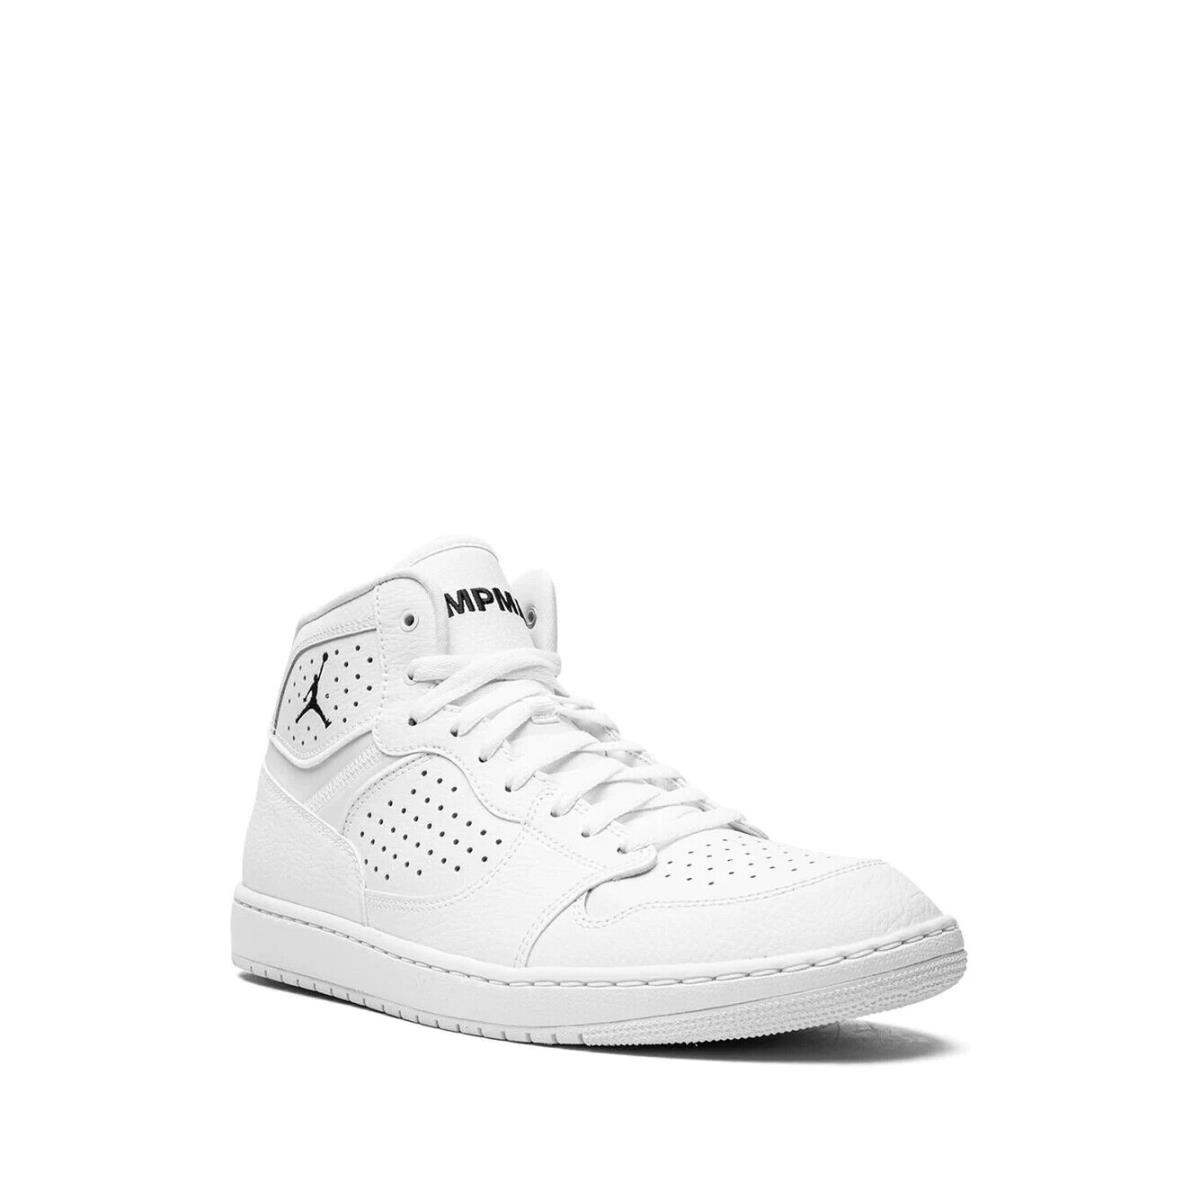 Nike shoes Air Access - White 2